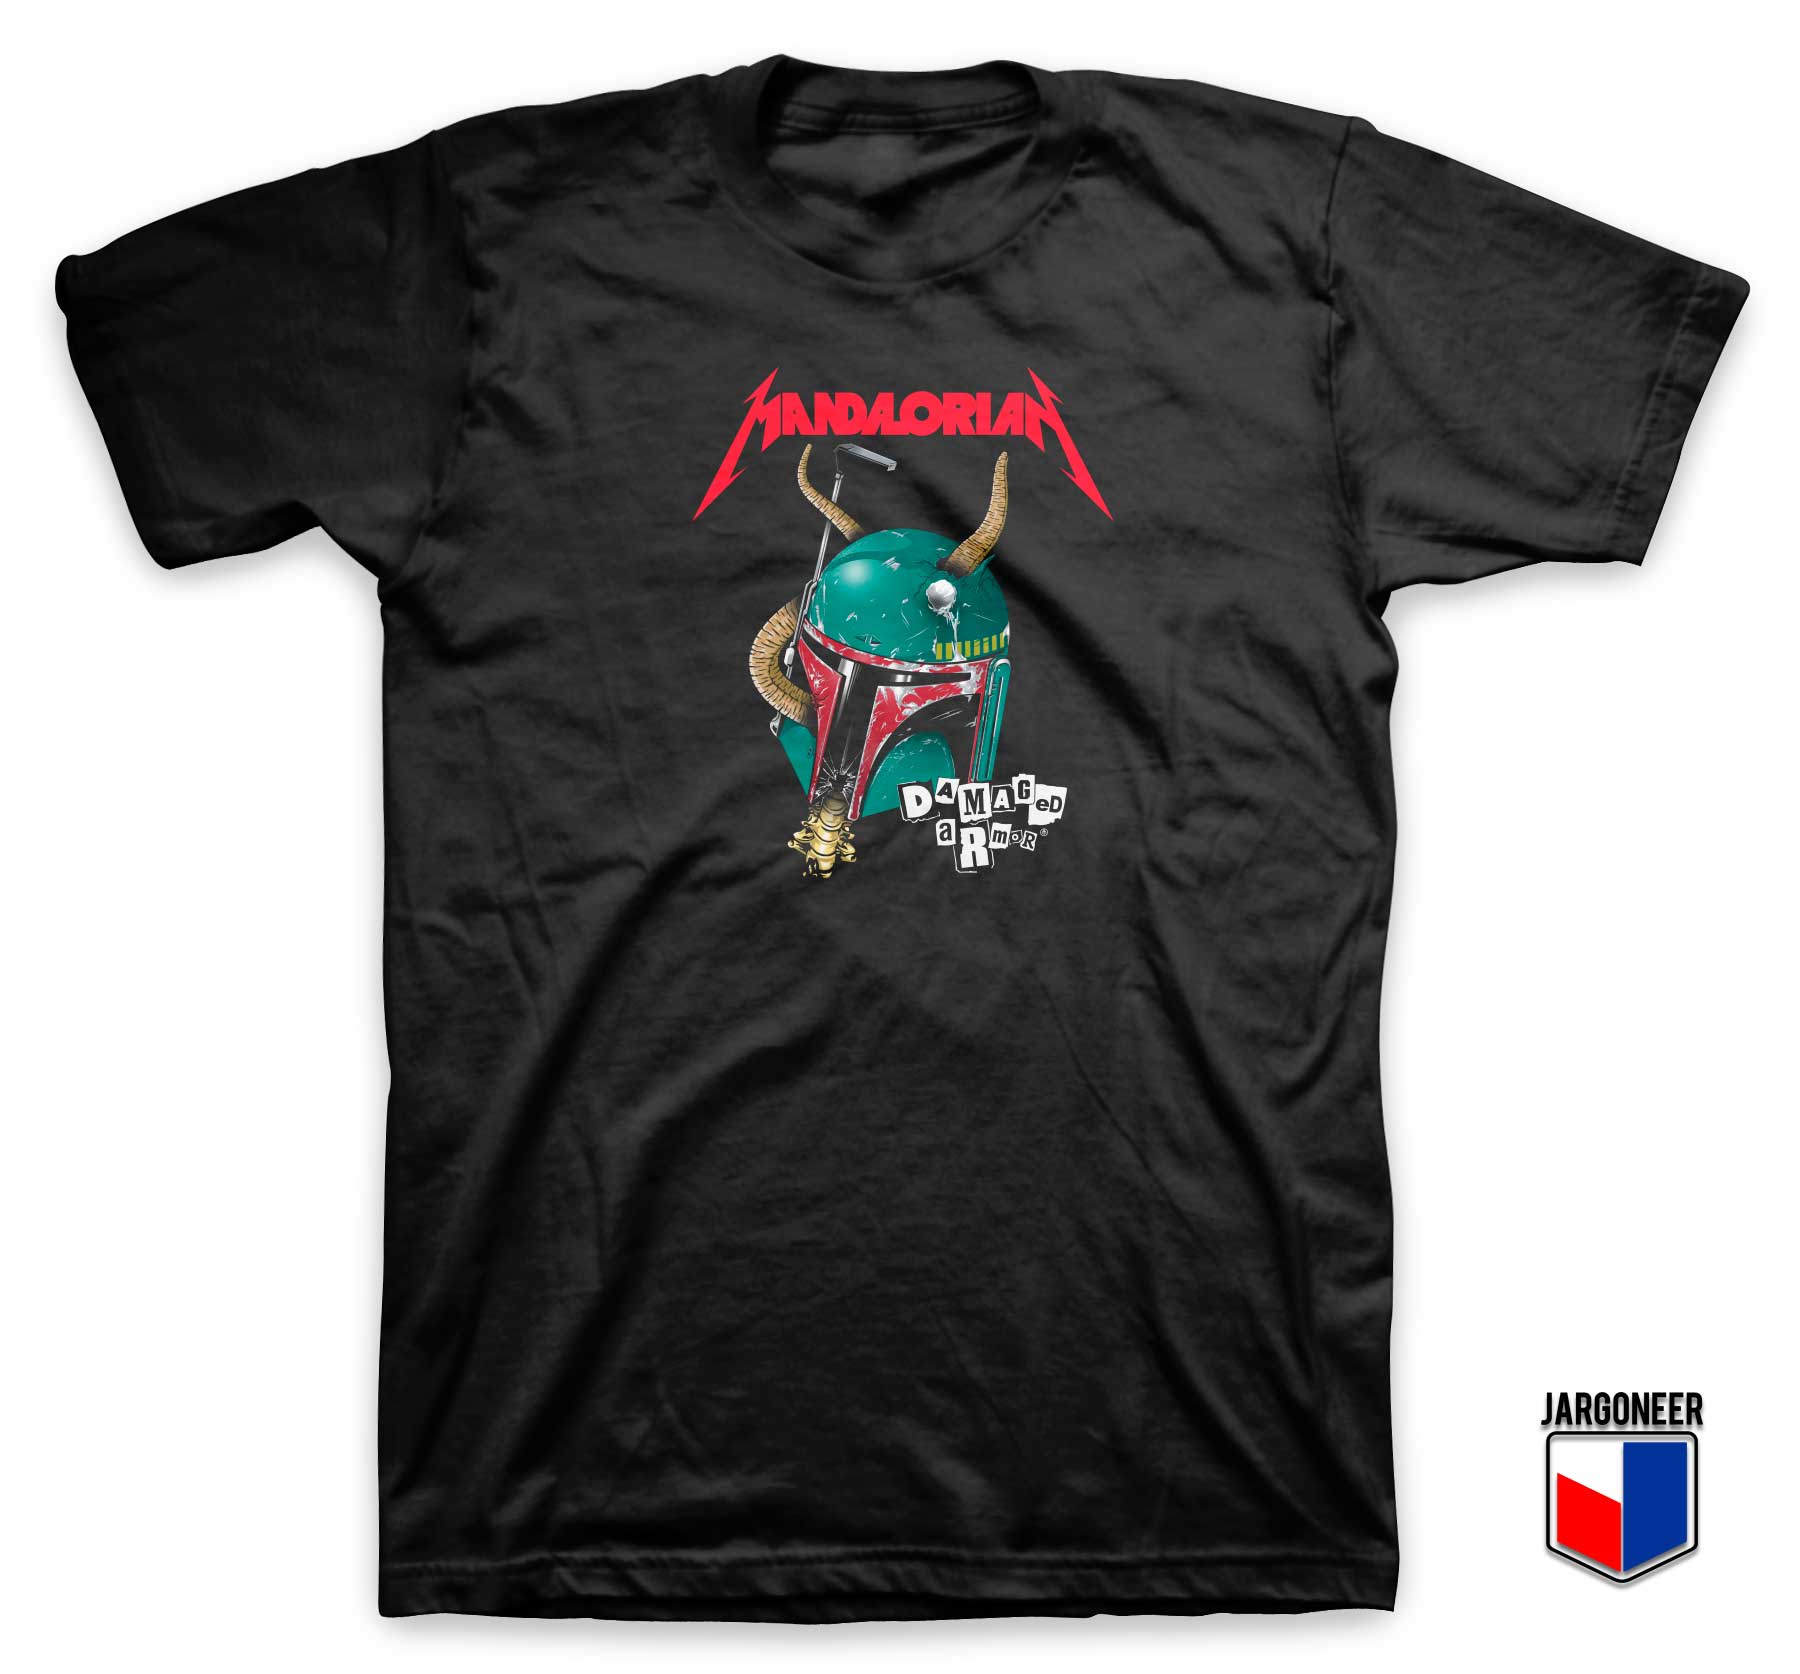 Bobba Mandalorian Damage Armor T Shirt - Shop Unique Graphic Cool Shirt Designs